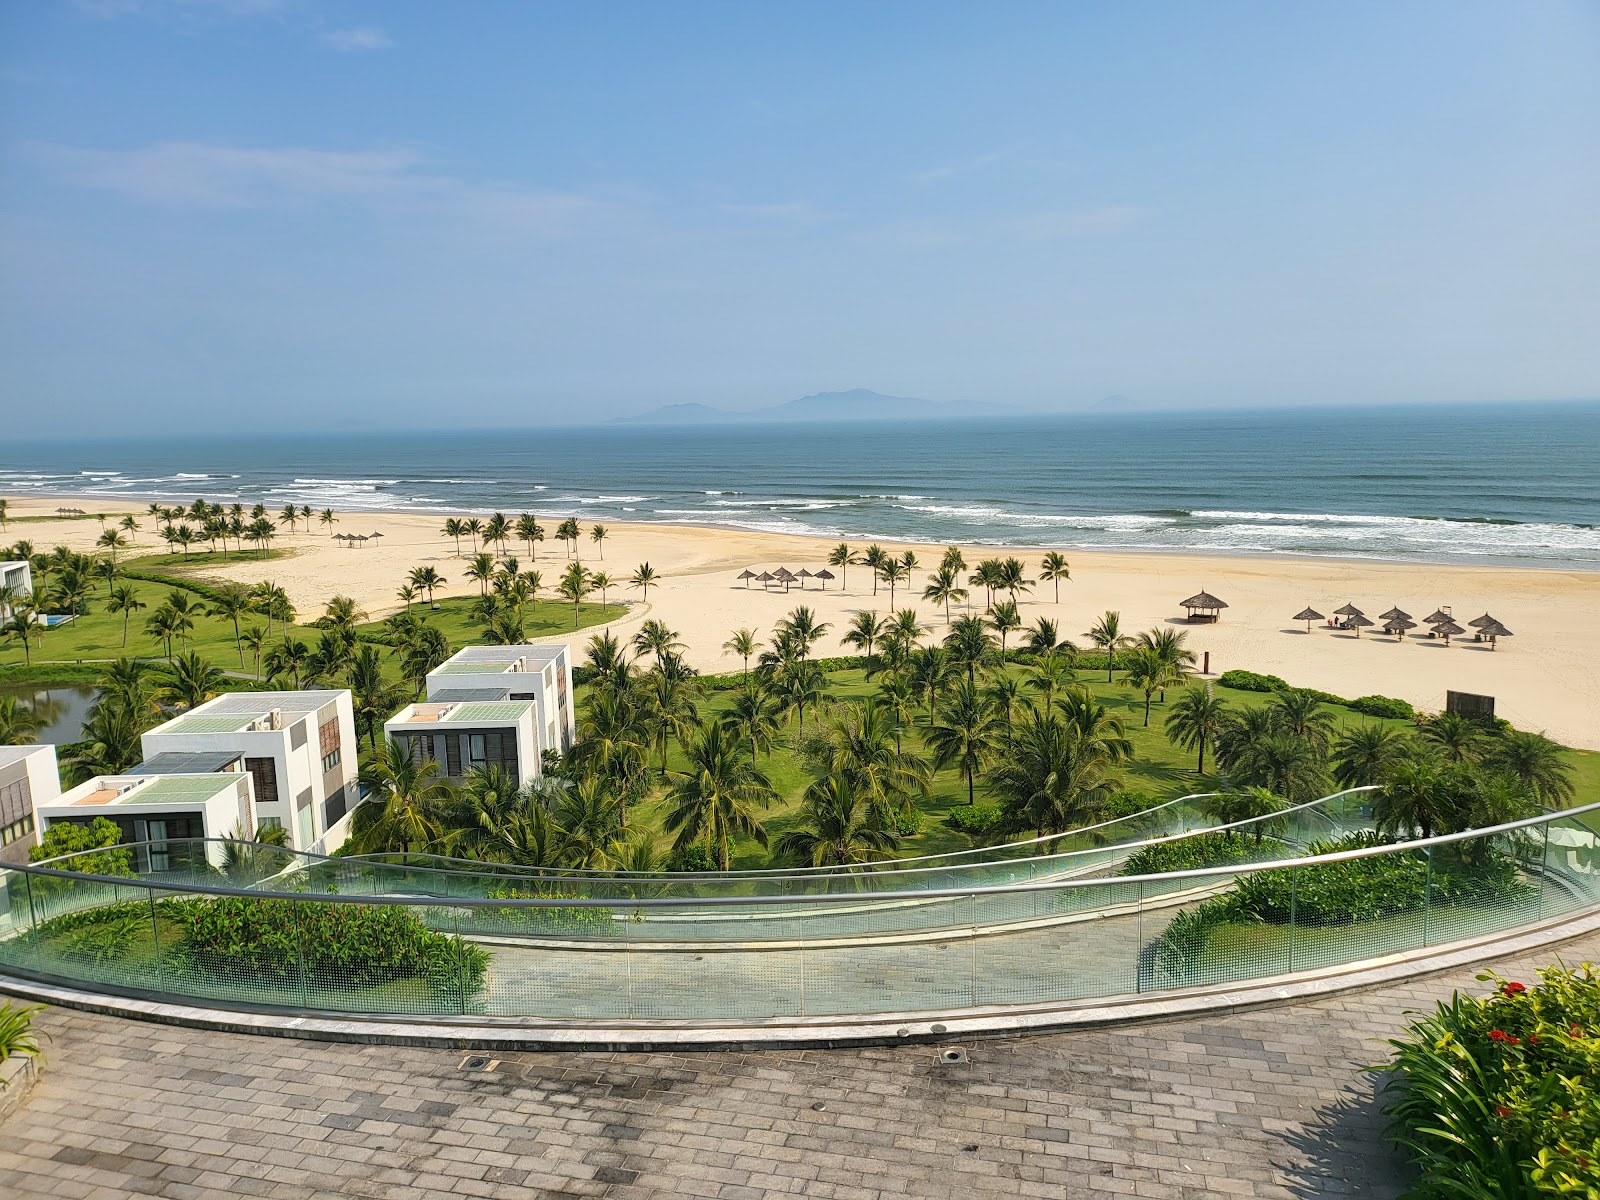 Foto de Thang Binh Beach - lugar popular entre os apreciadores de relaxamento